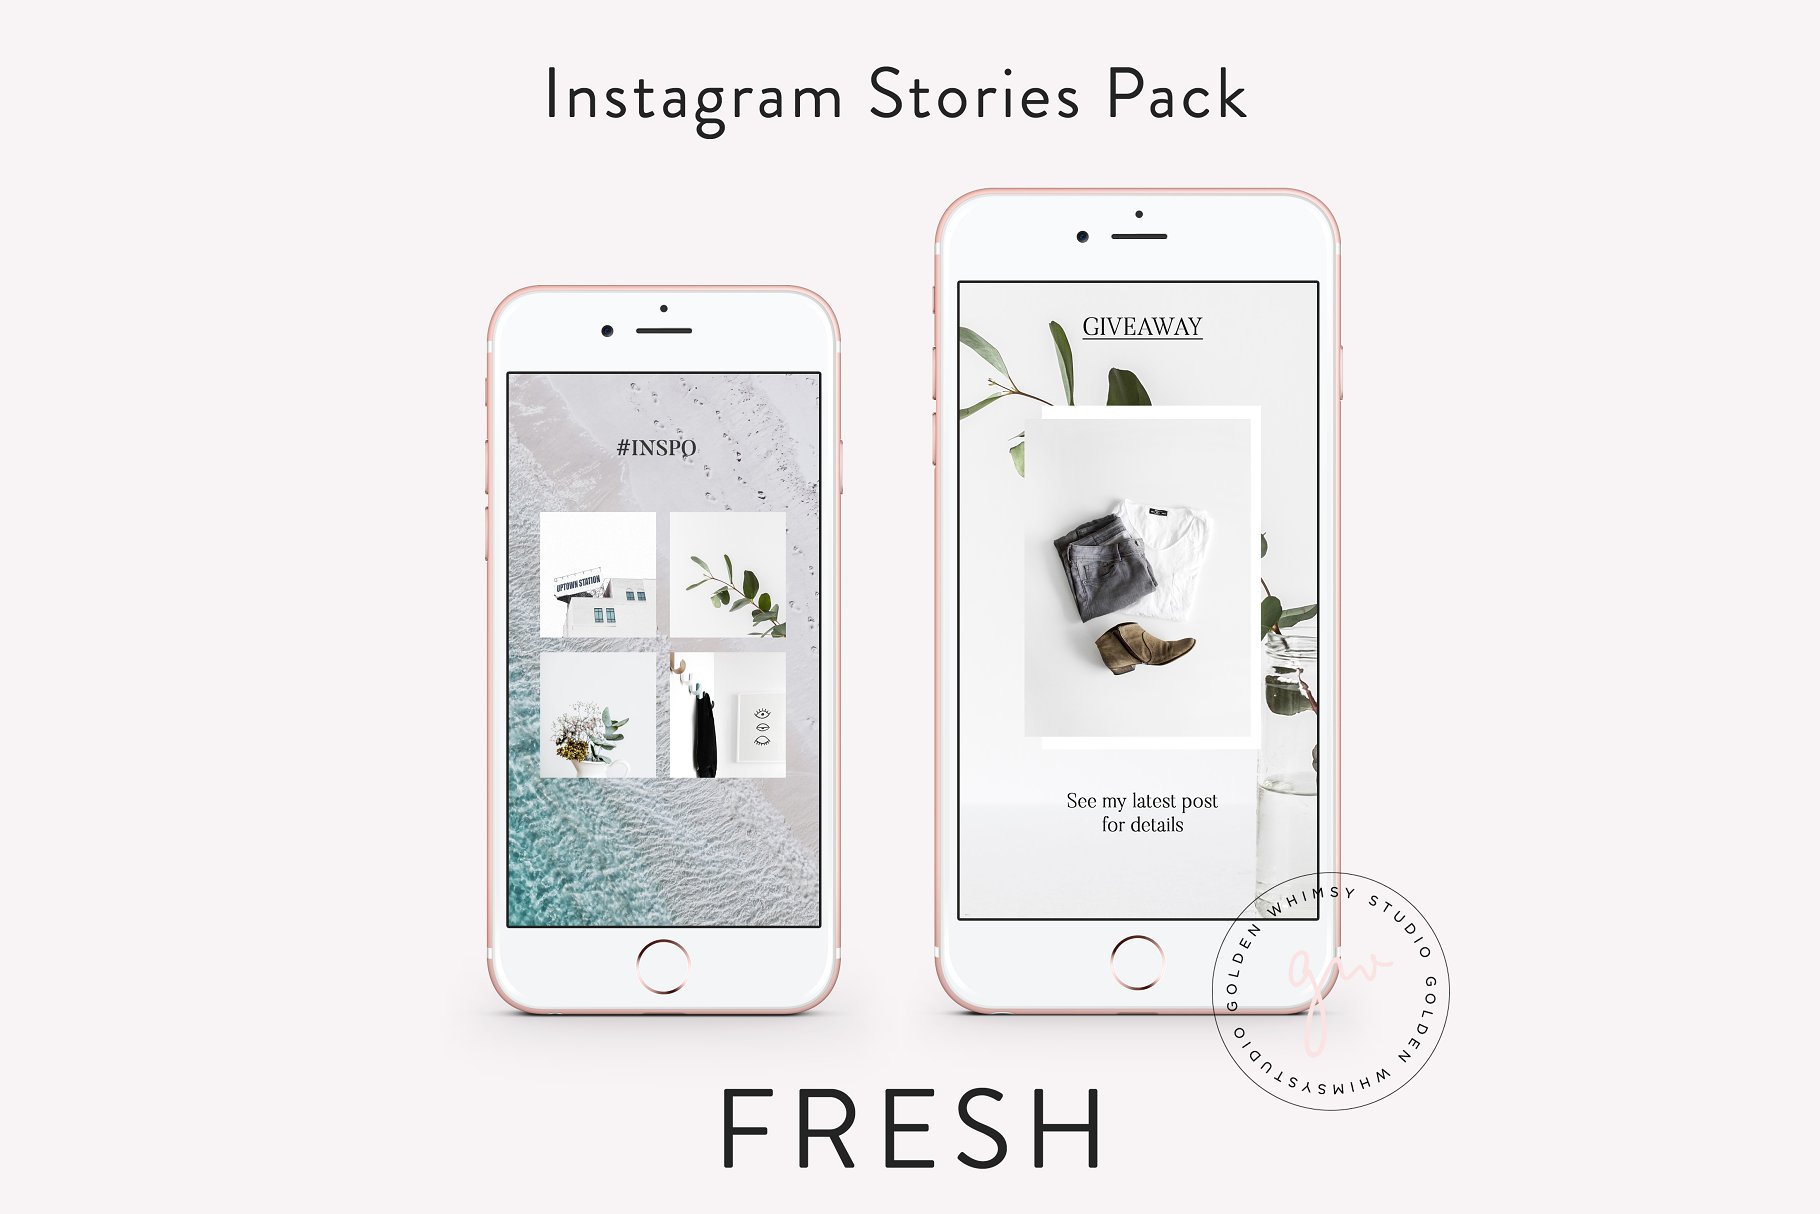 时尚干净利落的Instagram故事贴图模板素材库精选 FRESH Insta Stories插图